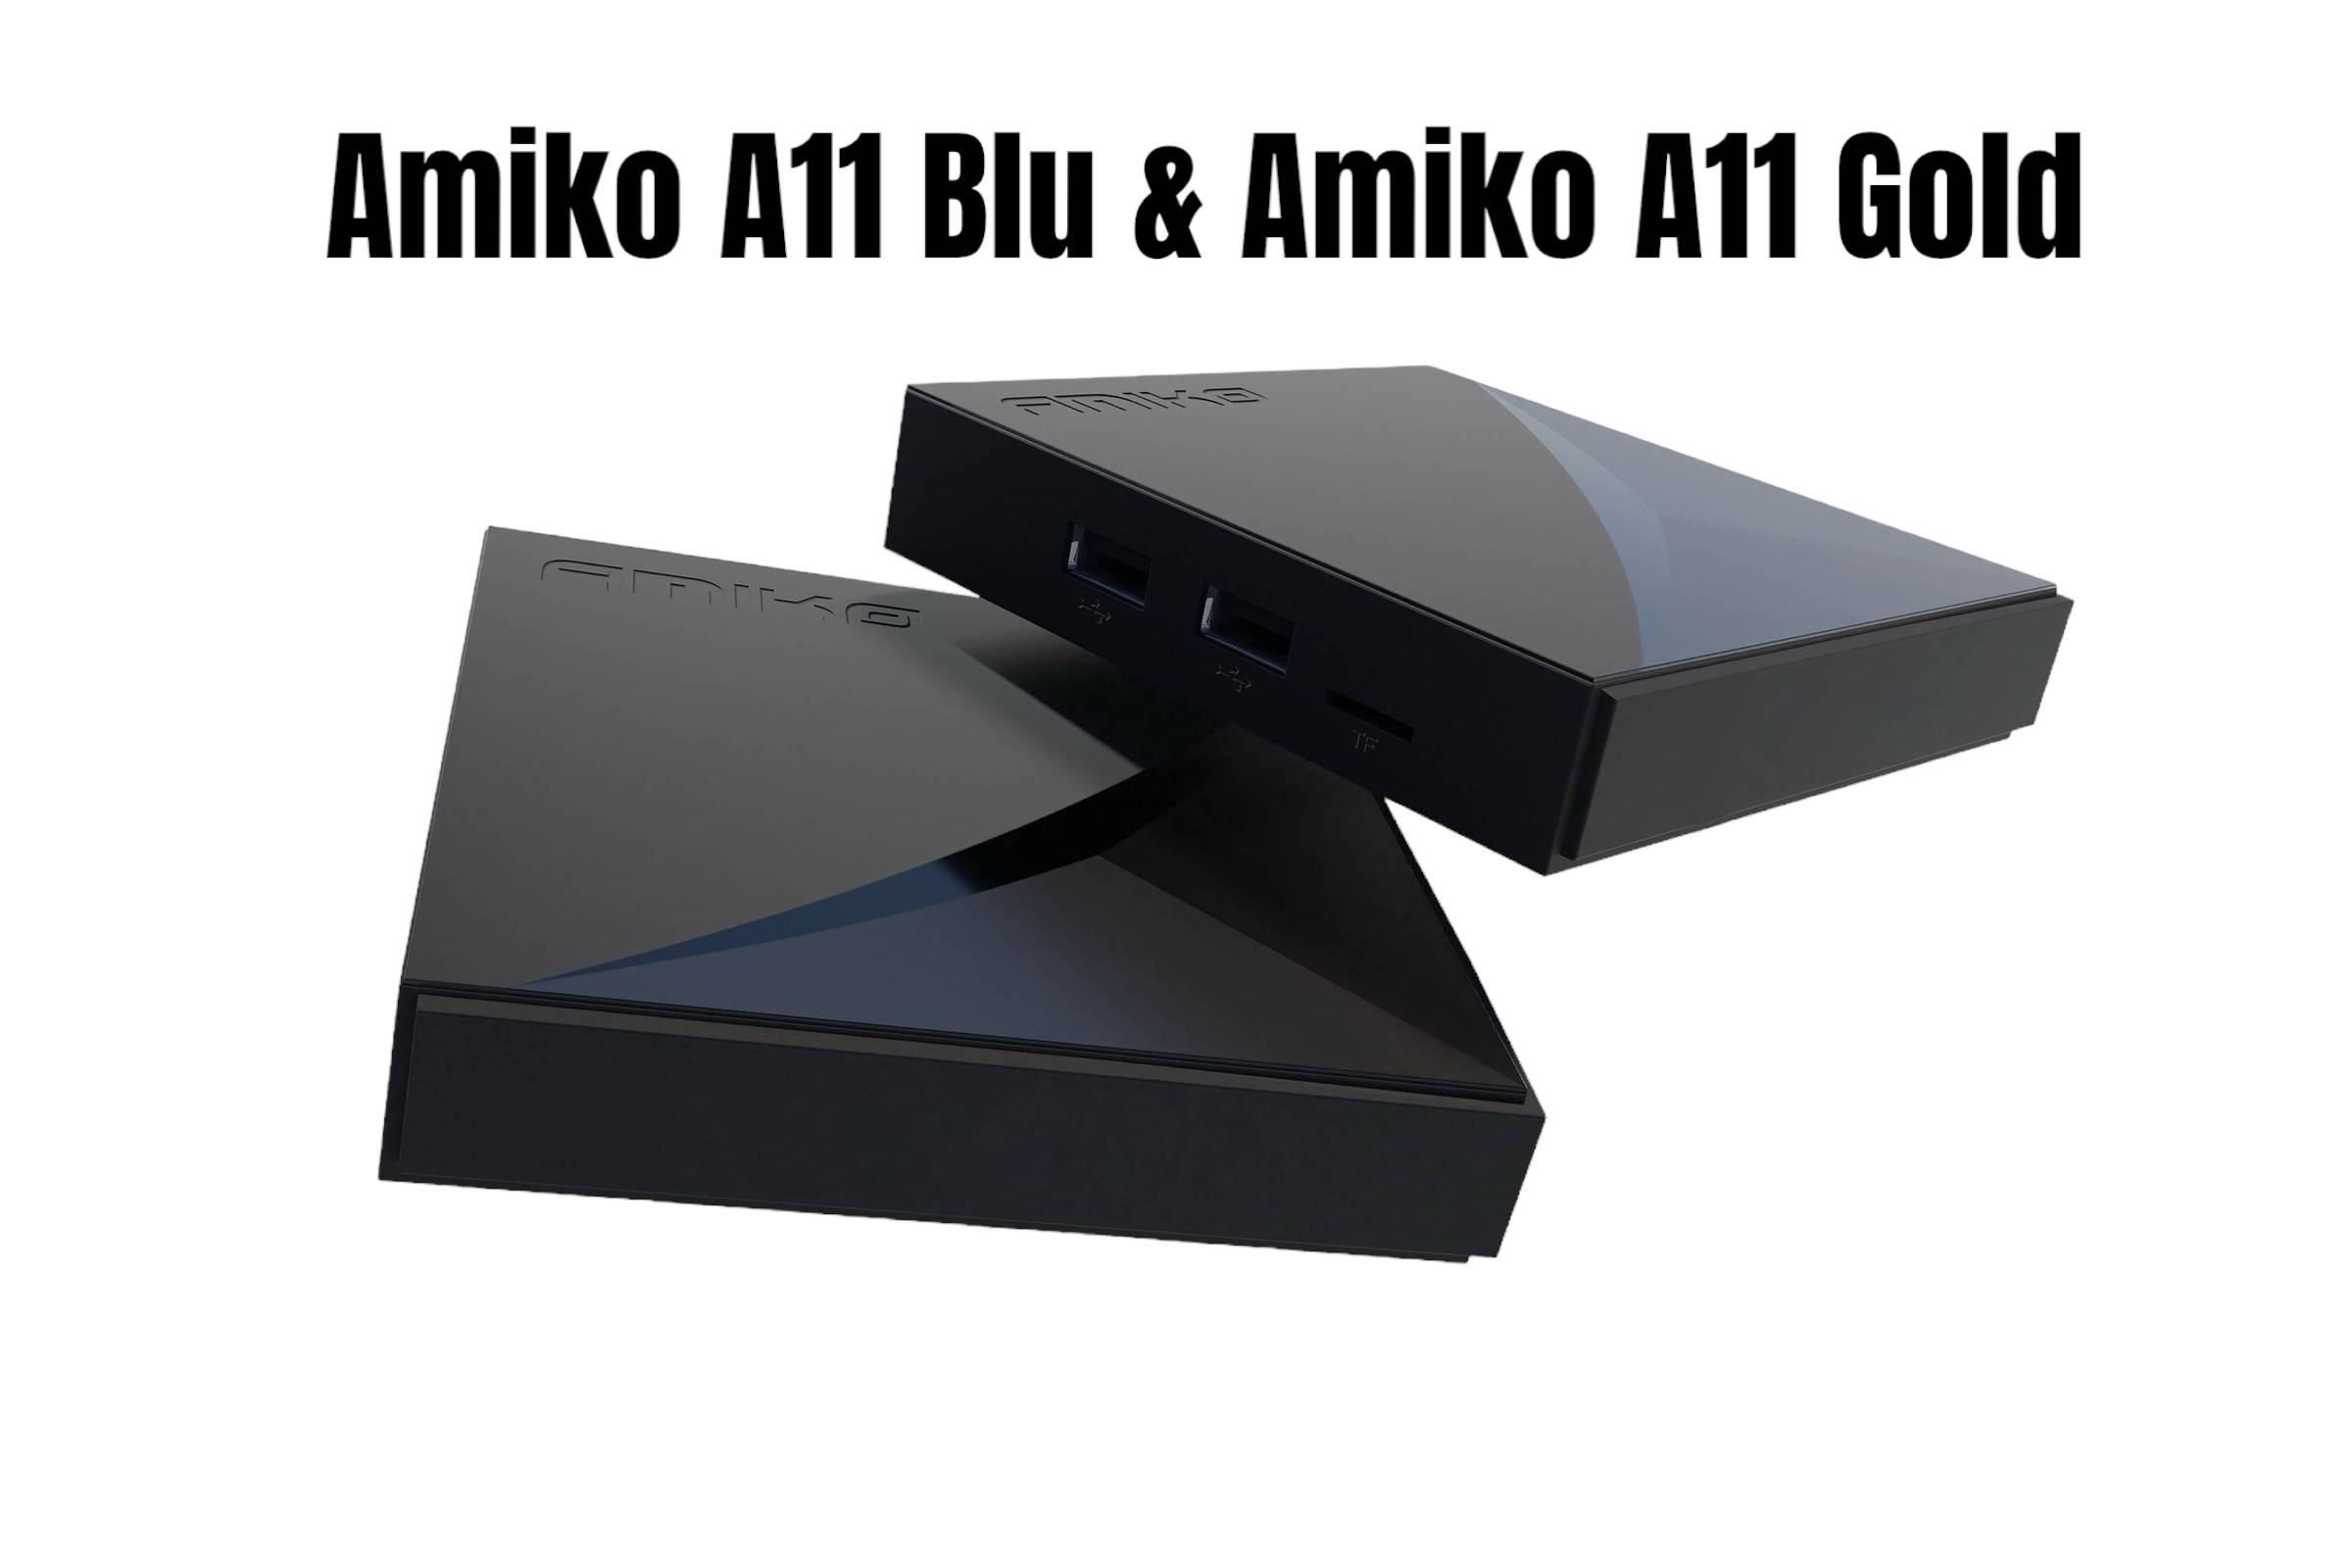 Nieuw Mytv3! Amiko A11 Gold en Amiko A11 Blu OTT